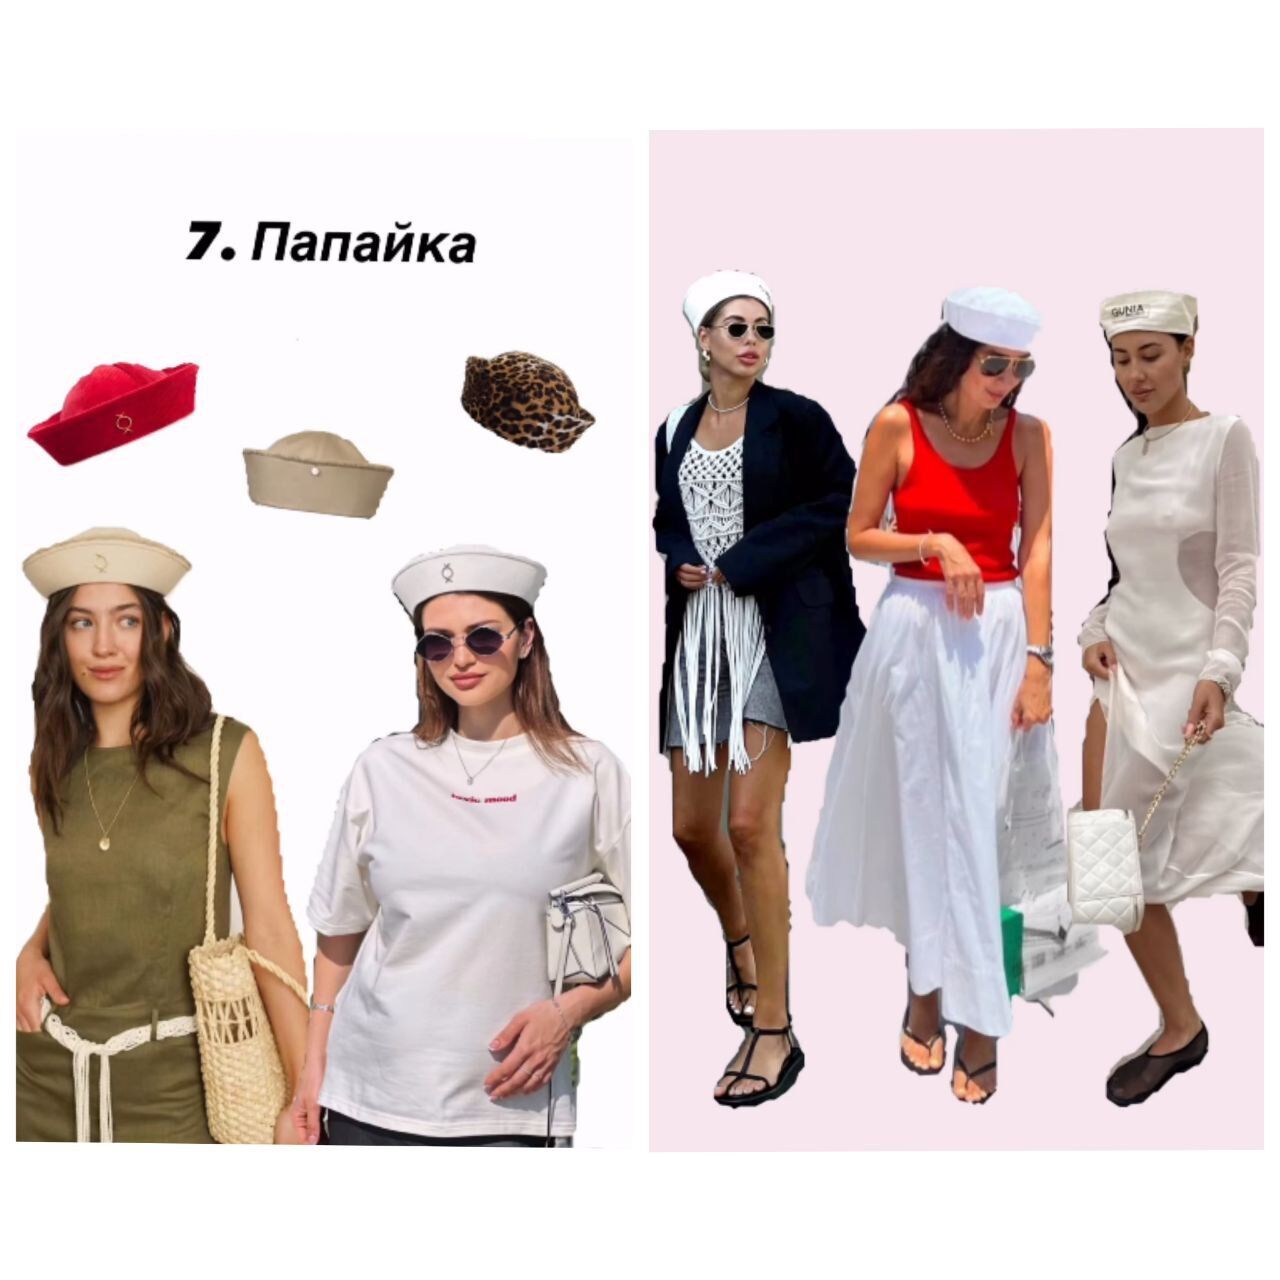 Od spódnic maxi po czapki marynarskie: styliści wymieniają 7 najmodniejszych elementów garderoby w tym sezonie